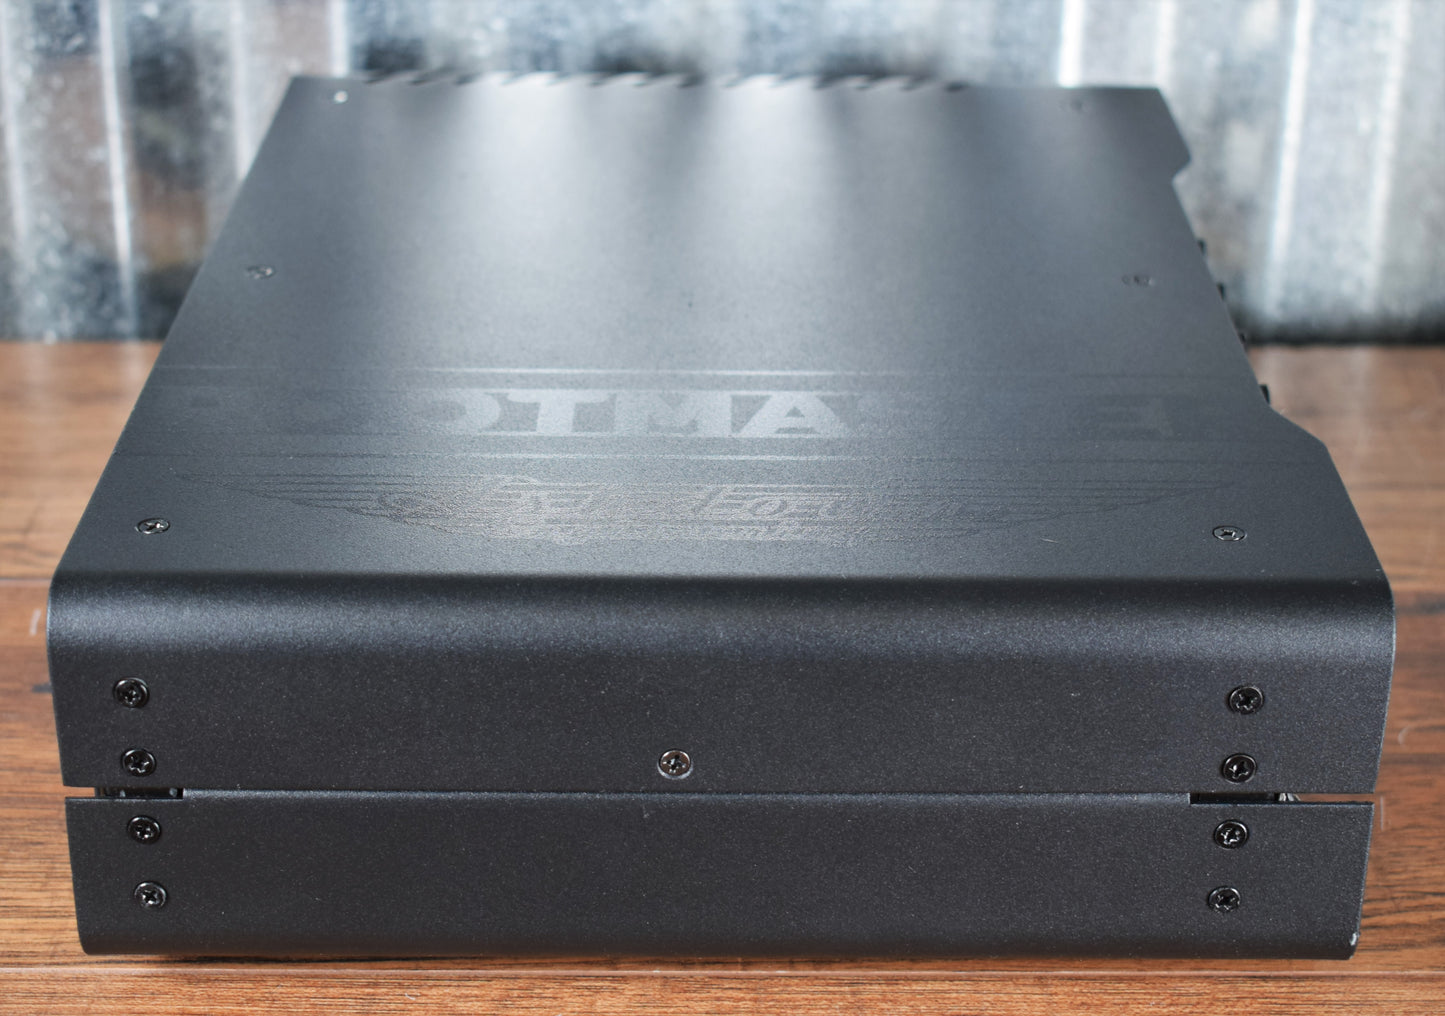 Ashdown Rootmaster RM-800H Utra-Light 800 Watt Bass Amplifier Head Demo